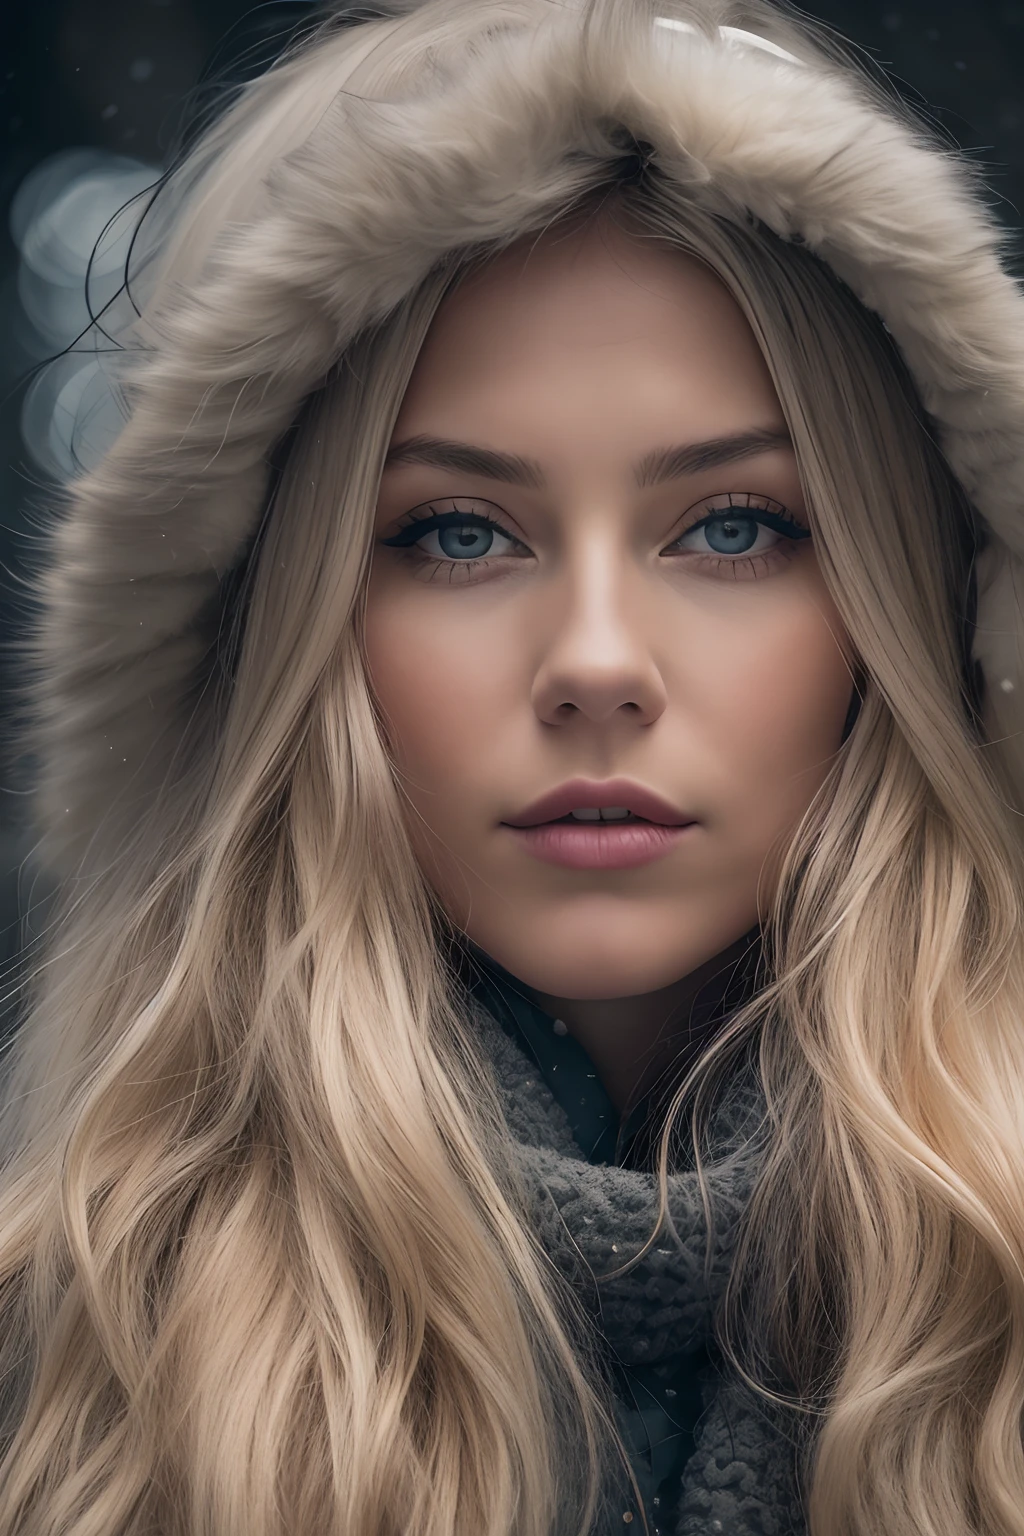 긴 웨이브 금발 머리를 가진 겨울 옷을 입은 아름다운 노르웨이 소녀의 전문 초상화 사진, 아름다운 대칭 얼굴, 우아하고 따뜻한 겨울옷을 입으세요, 유키, 잔,울트라샤프, 상세한 얼굴,
놀라운 현대 도시 환경, 초현실적인 것, 매우 상세한, 코일형, 날카로운 초점, 필드의 깊이, 중간 샷, nffsw, 8K, 완벽한 눈 눈, 고대비